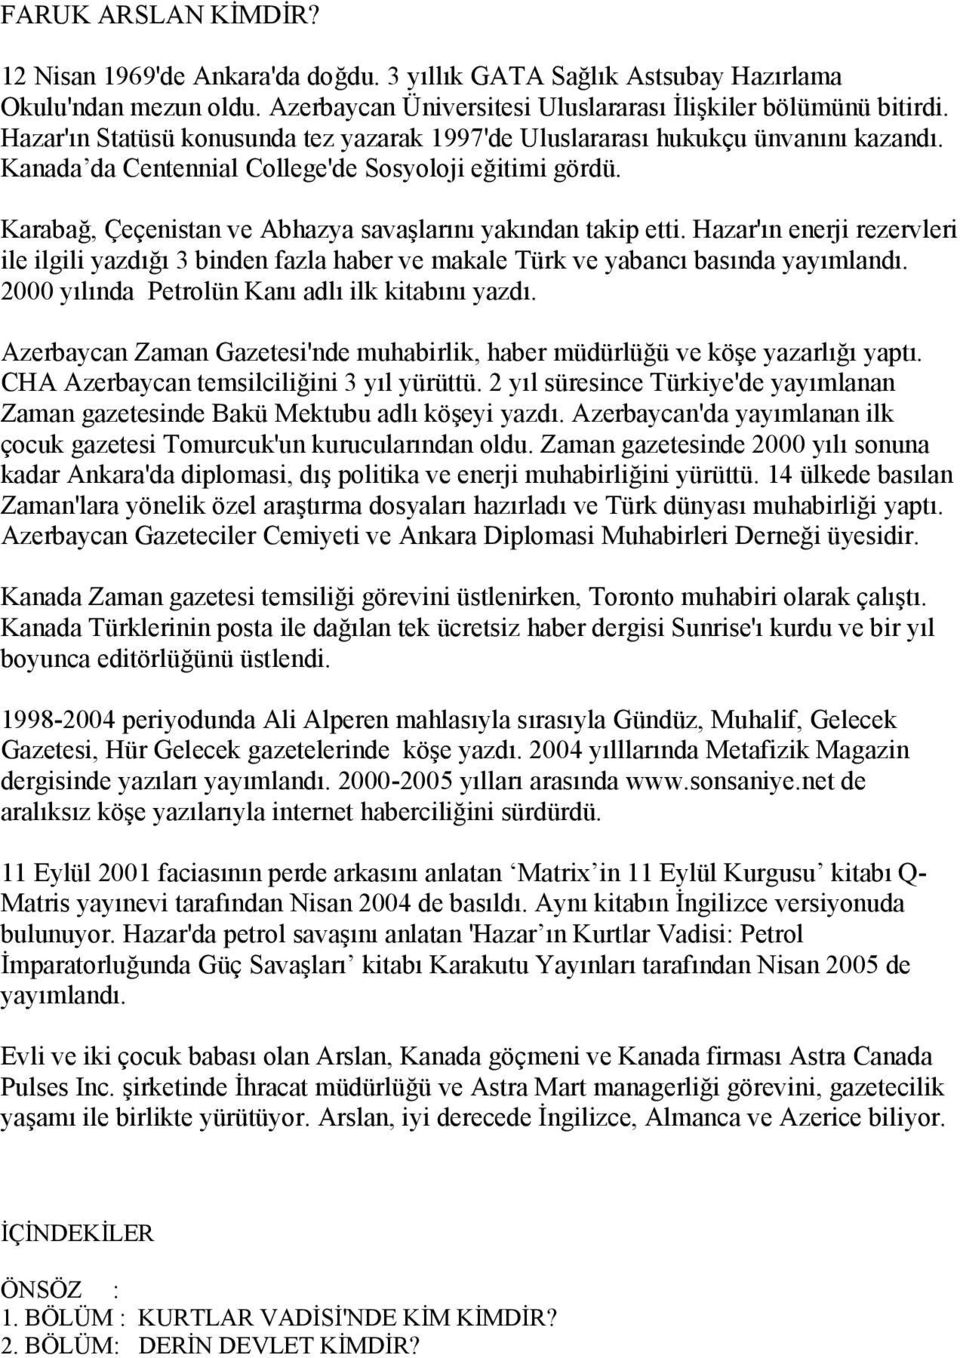 Karabağ, Çeçenistan ve Abhazya savaşlarını yakından takip etti. Hazar'ın enerji rezervleri ile ilgili yazdığı 3 binden fazla haber ve makale Türk ve yabancı basında yayımlandı.